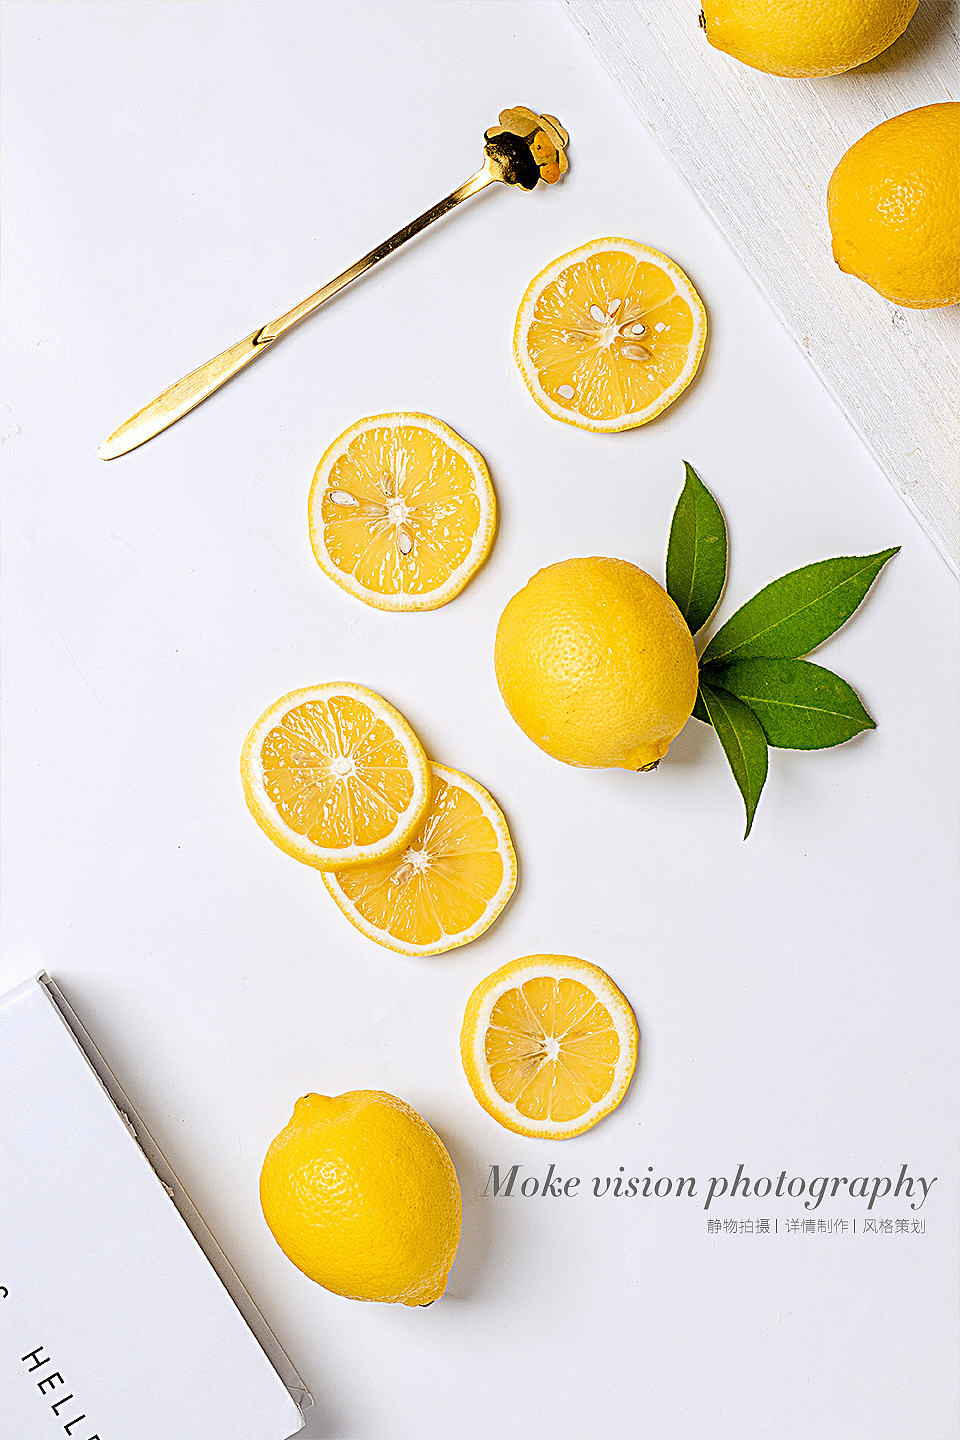 静物拍摄/水果拍摄/新鲜黄柠檬拍摄